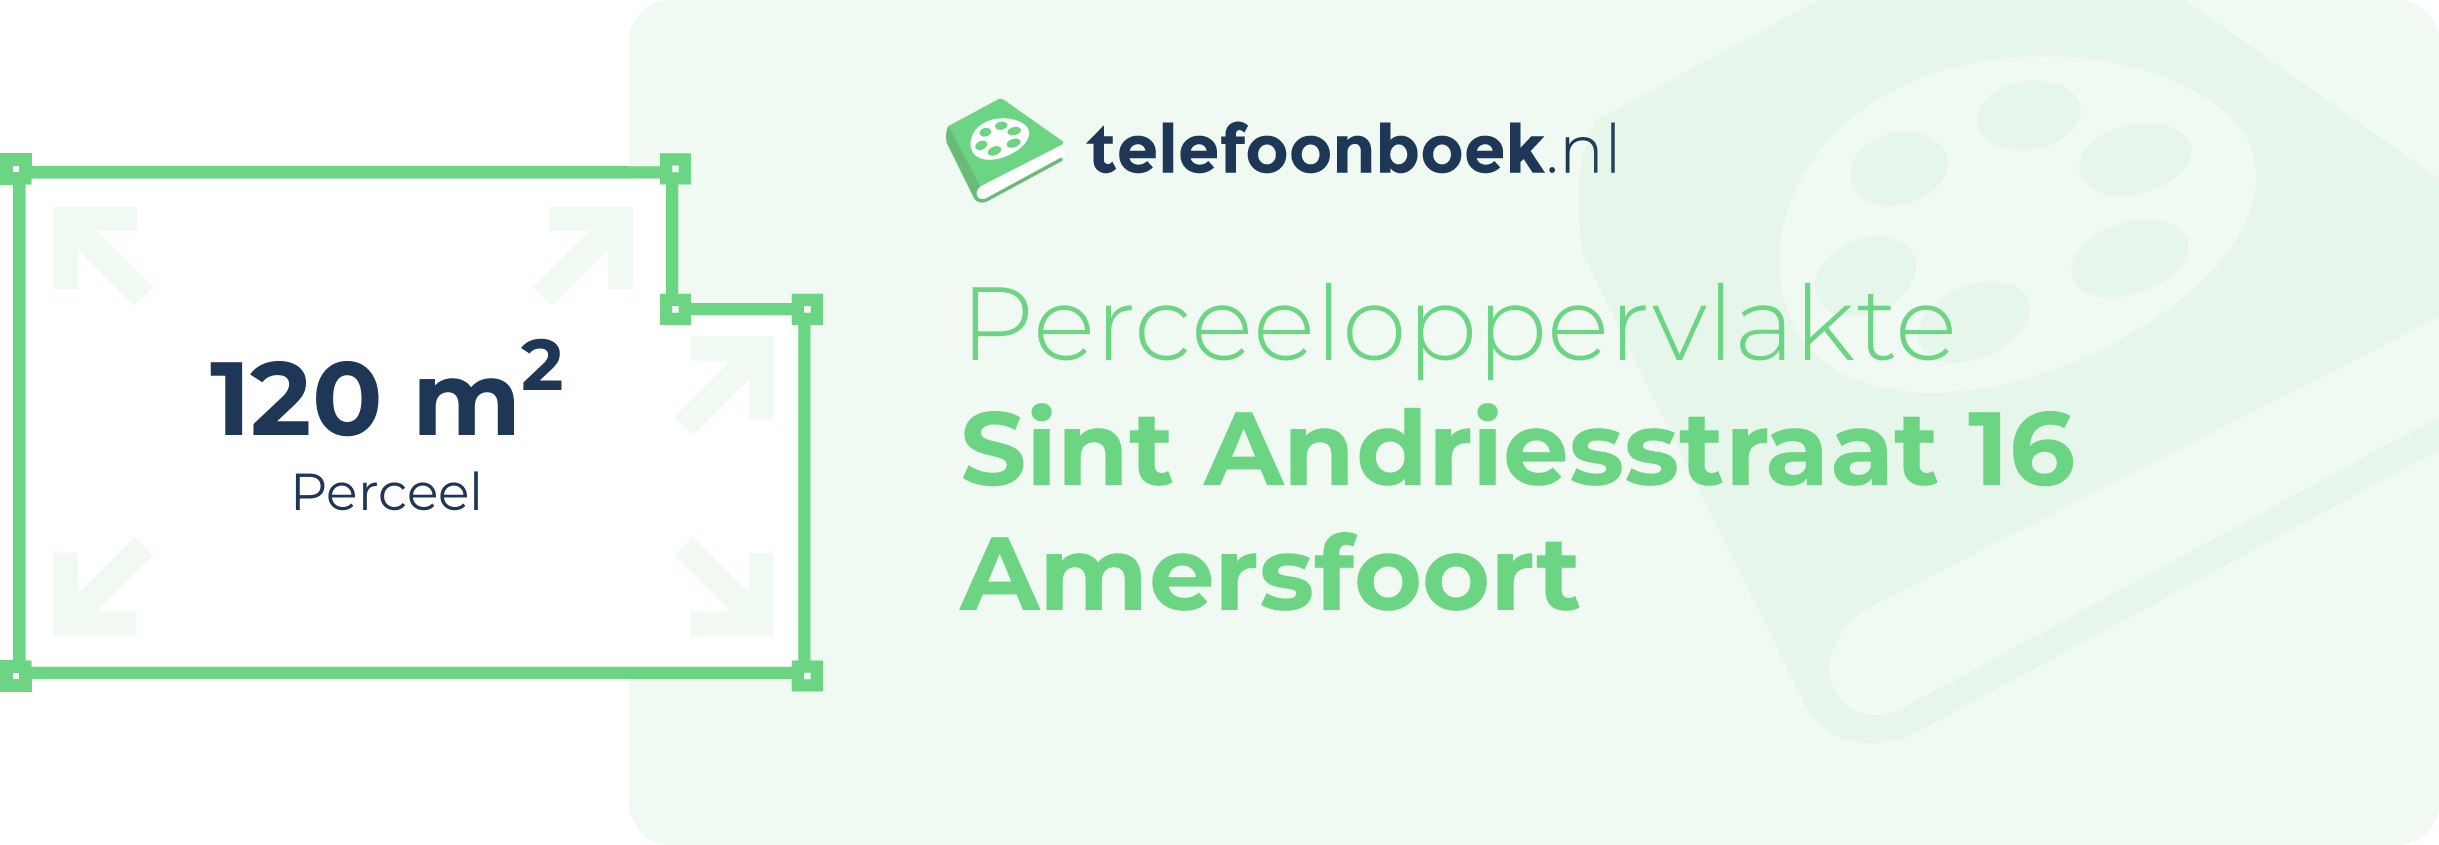 Perceeloppervlakte Sint Andriesstraat 16 Amersfoort